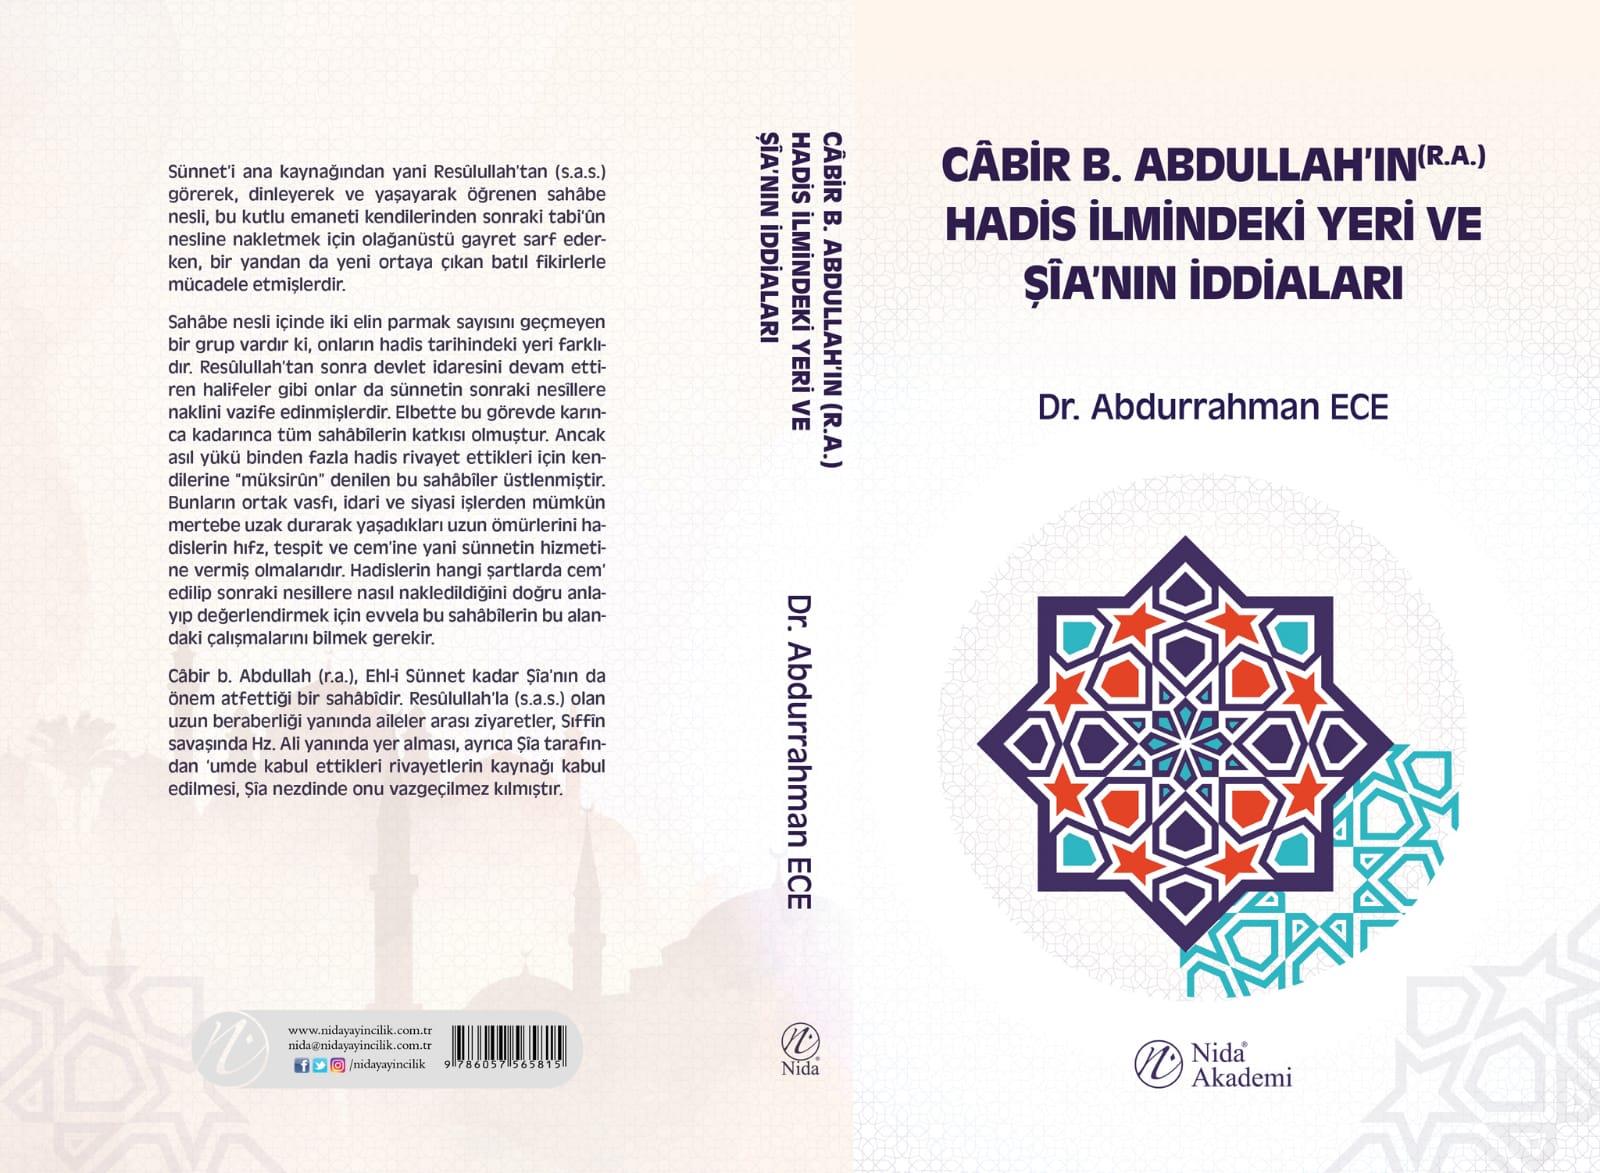 Dr. Öğr. Üyesi Abdurrahman ECE hocamızın “Câbir b. Abdullah’ın Hadis İlmindeki Yeri ve Şia’nın İddiaları” adlı kitabı çıktı.